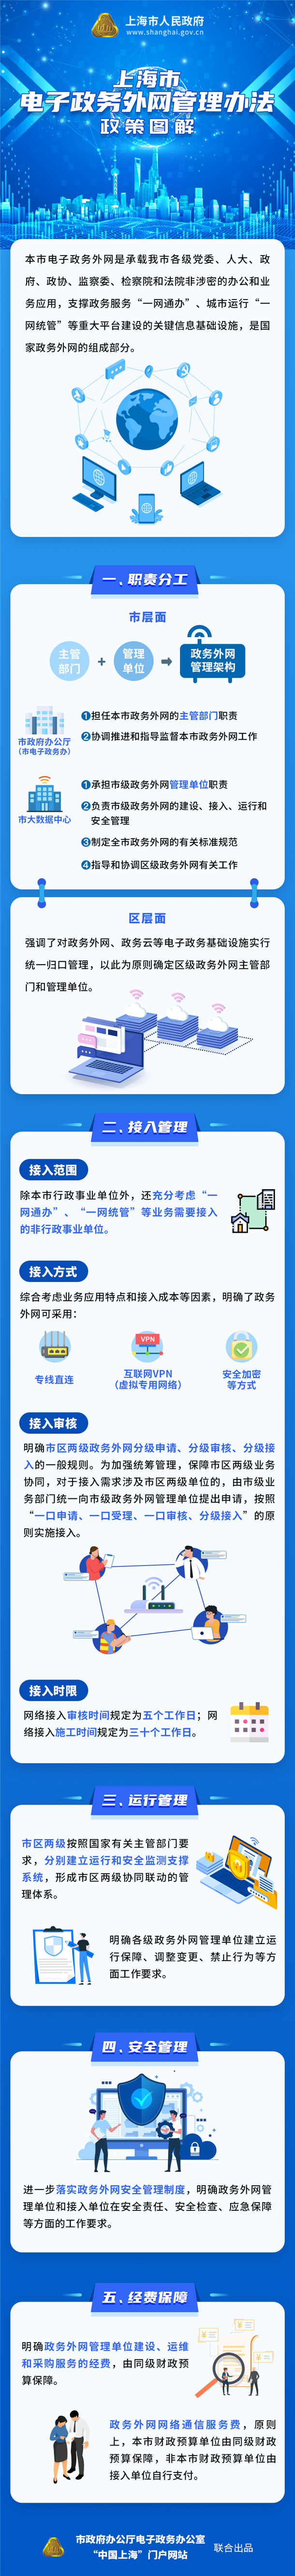 《上海市电子政务外网管理办法》政策图解